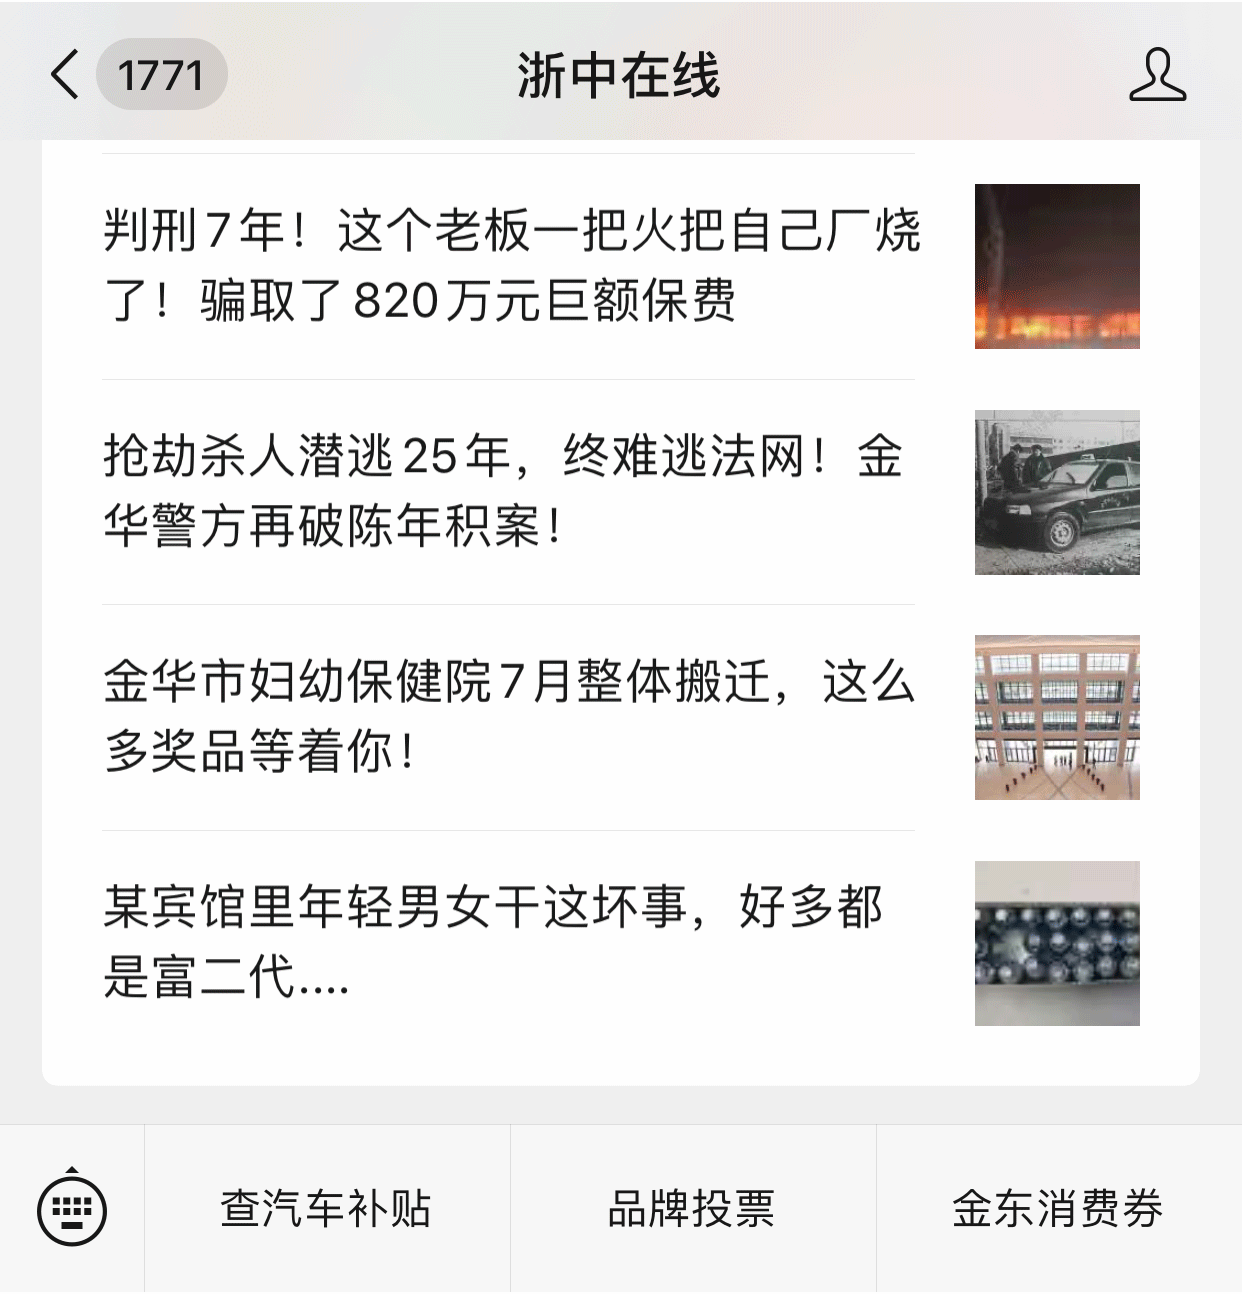 荆州seo公司推荐23火星_信阳seo公司推荐23火星_金华seo公司推荐